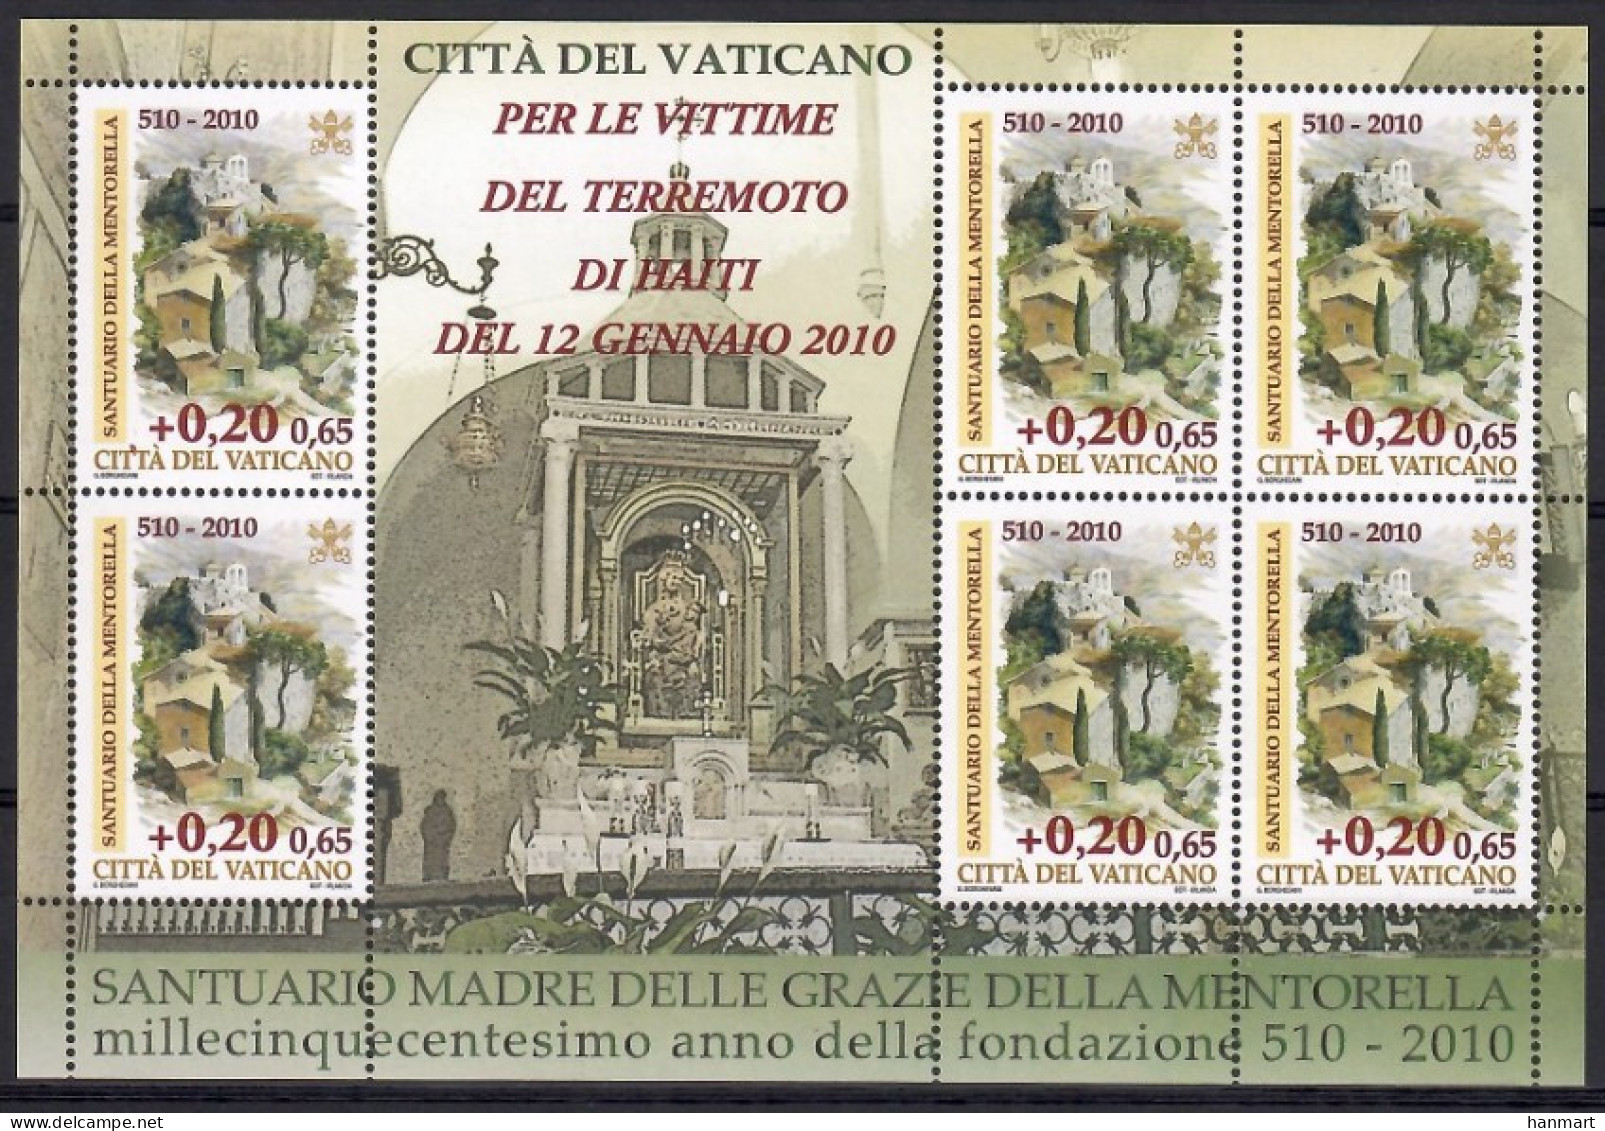 Vatican City 2010 Mi Sheet 1664 MNH  (ZE2 VTCark1664) - Christianisme